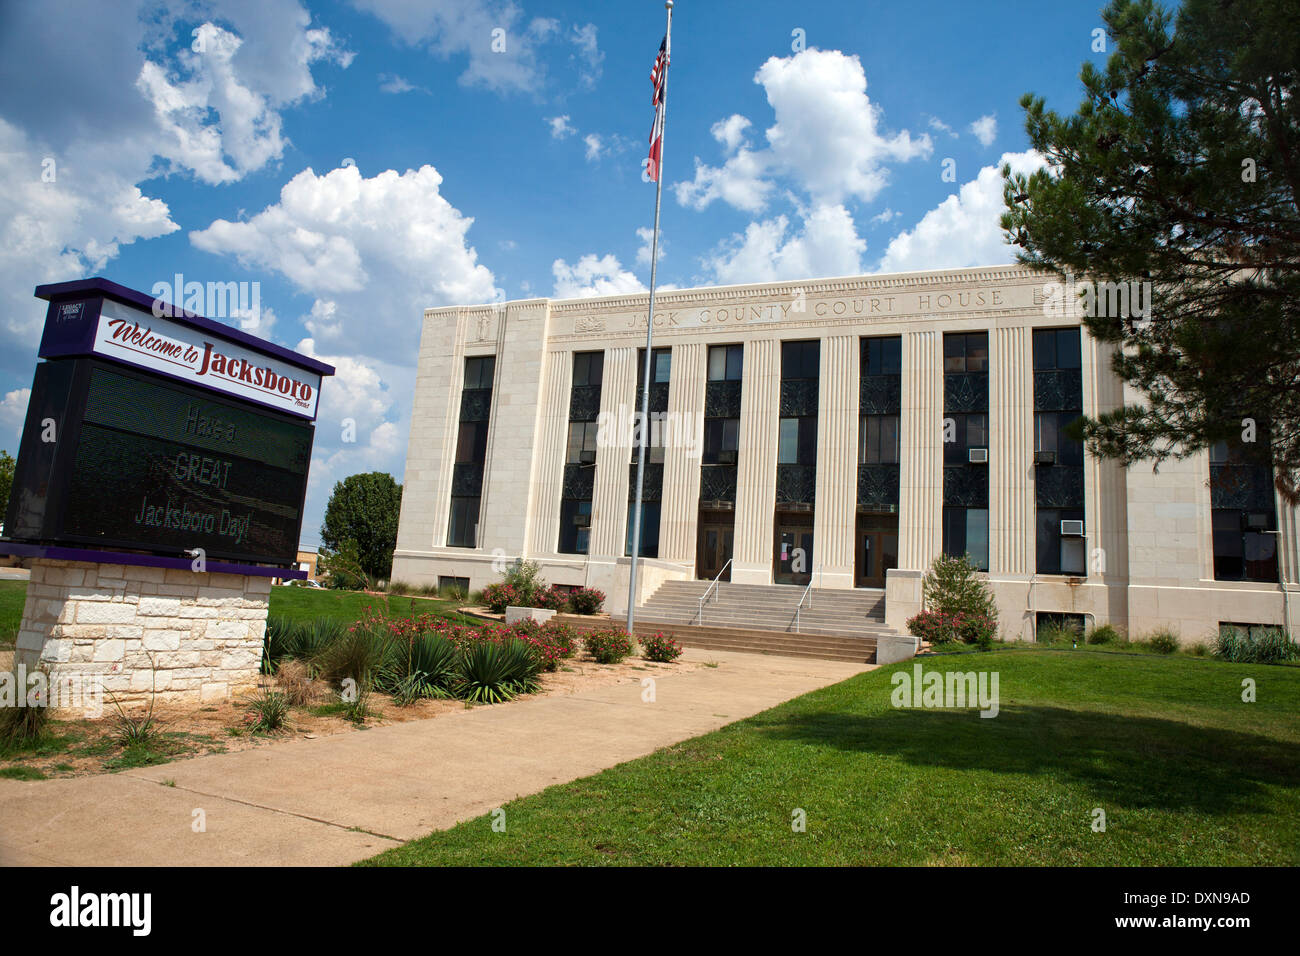 Jack County Court House, Jacksboro, Texas, United States of America Stock Photo